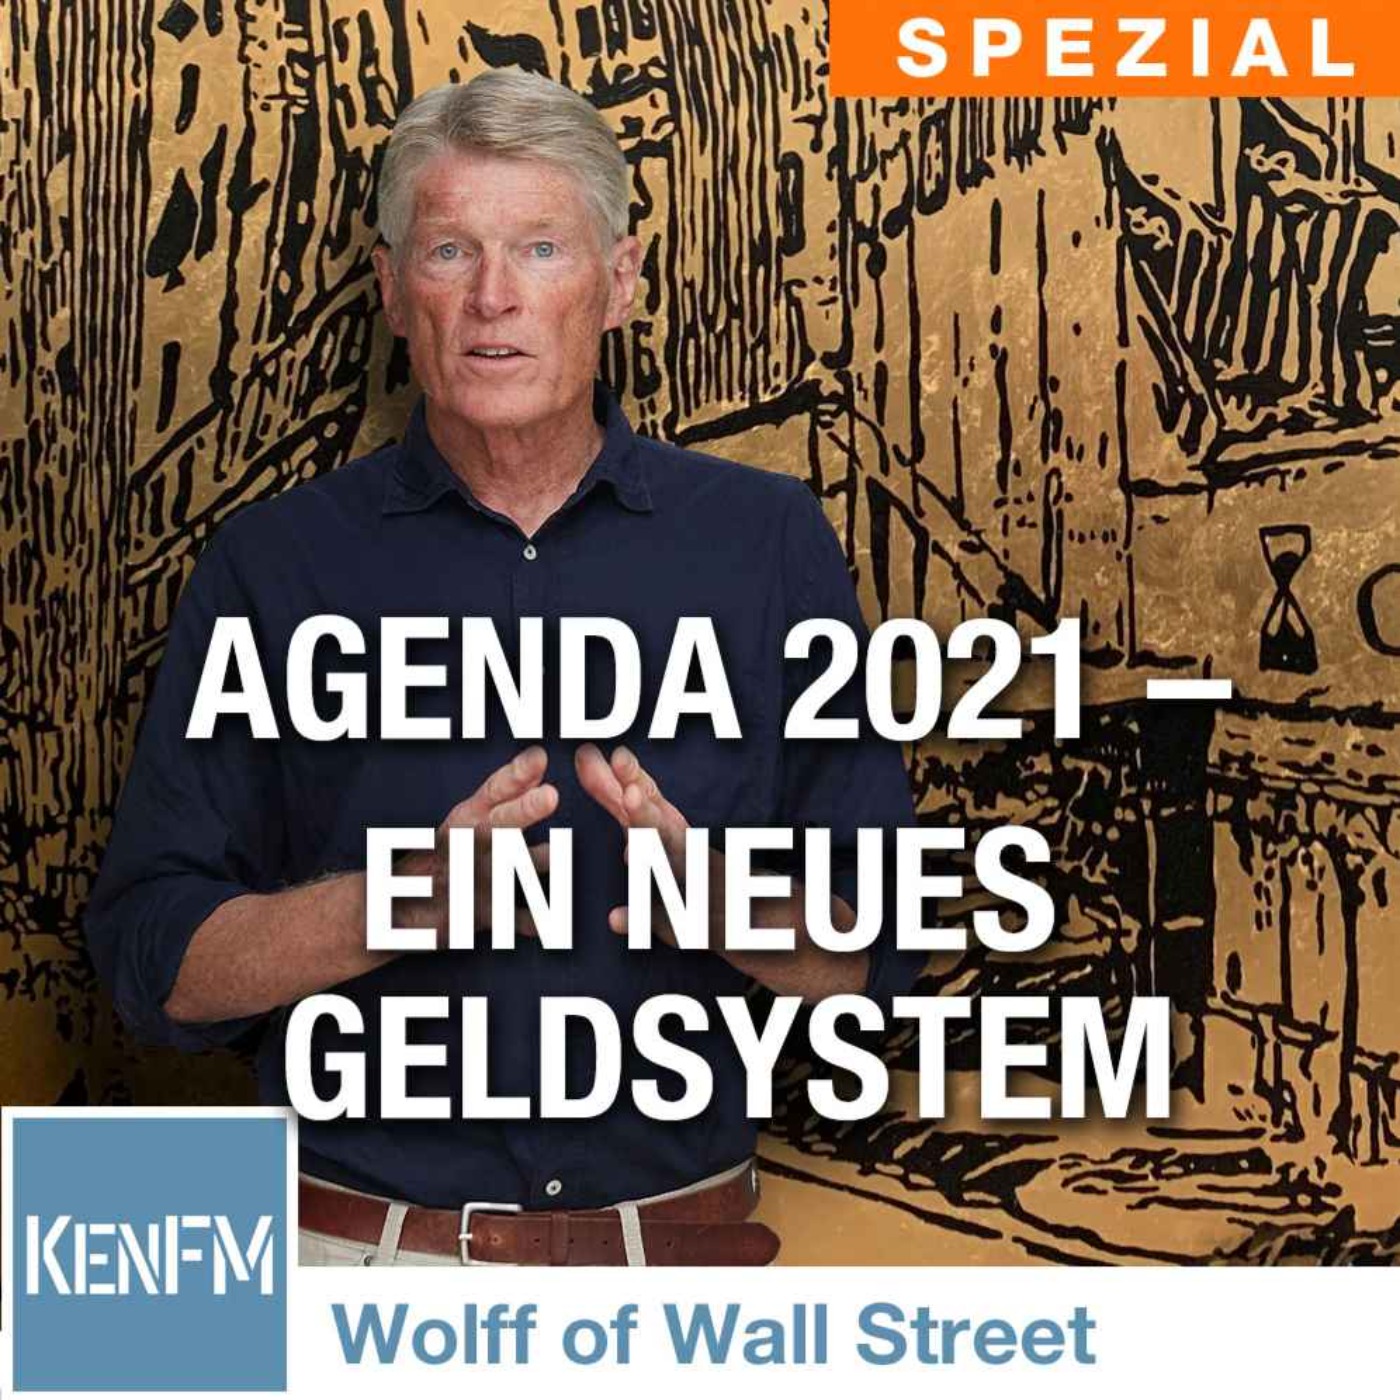 The Wolff of Wall Street SPEZIAL: Agenda 2021 – Ein neues Geldsystem